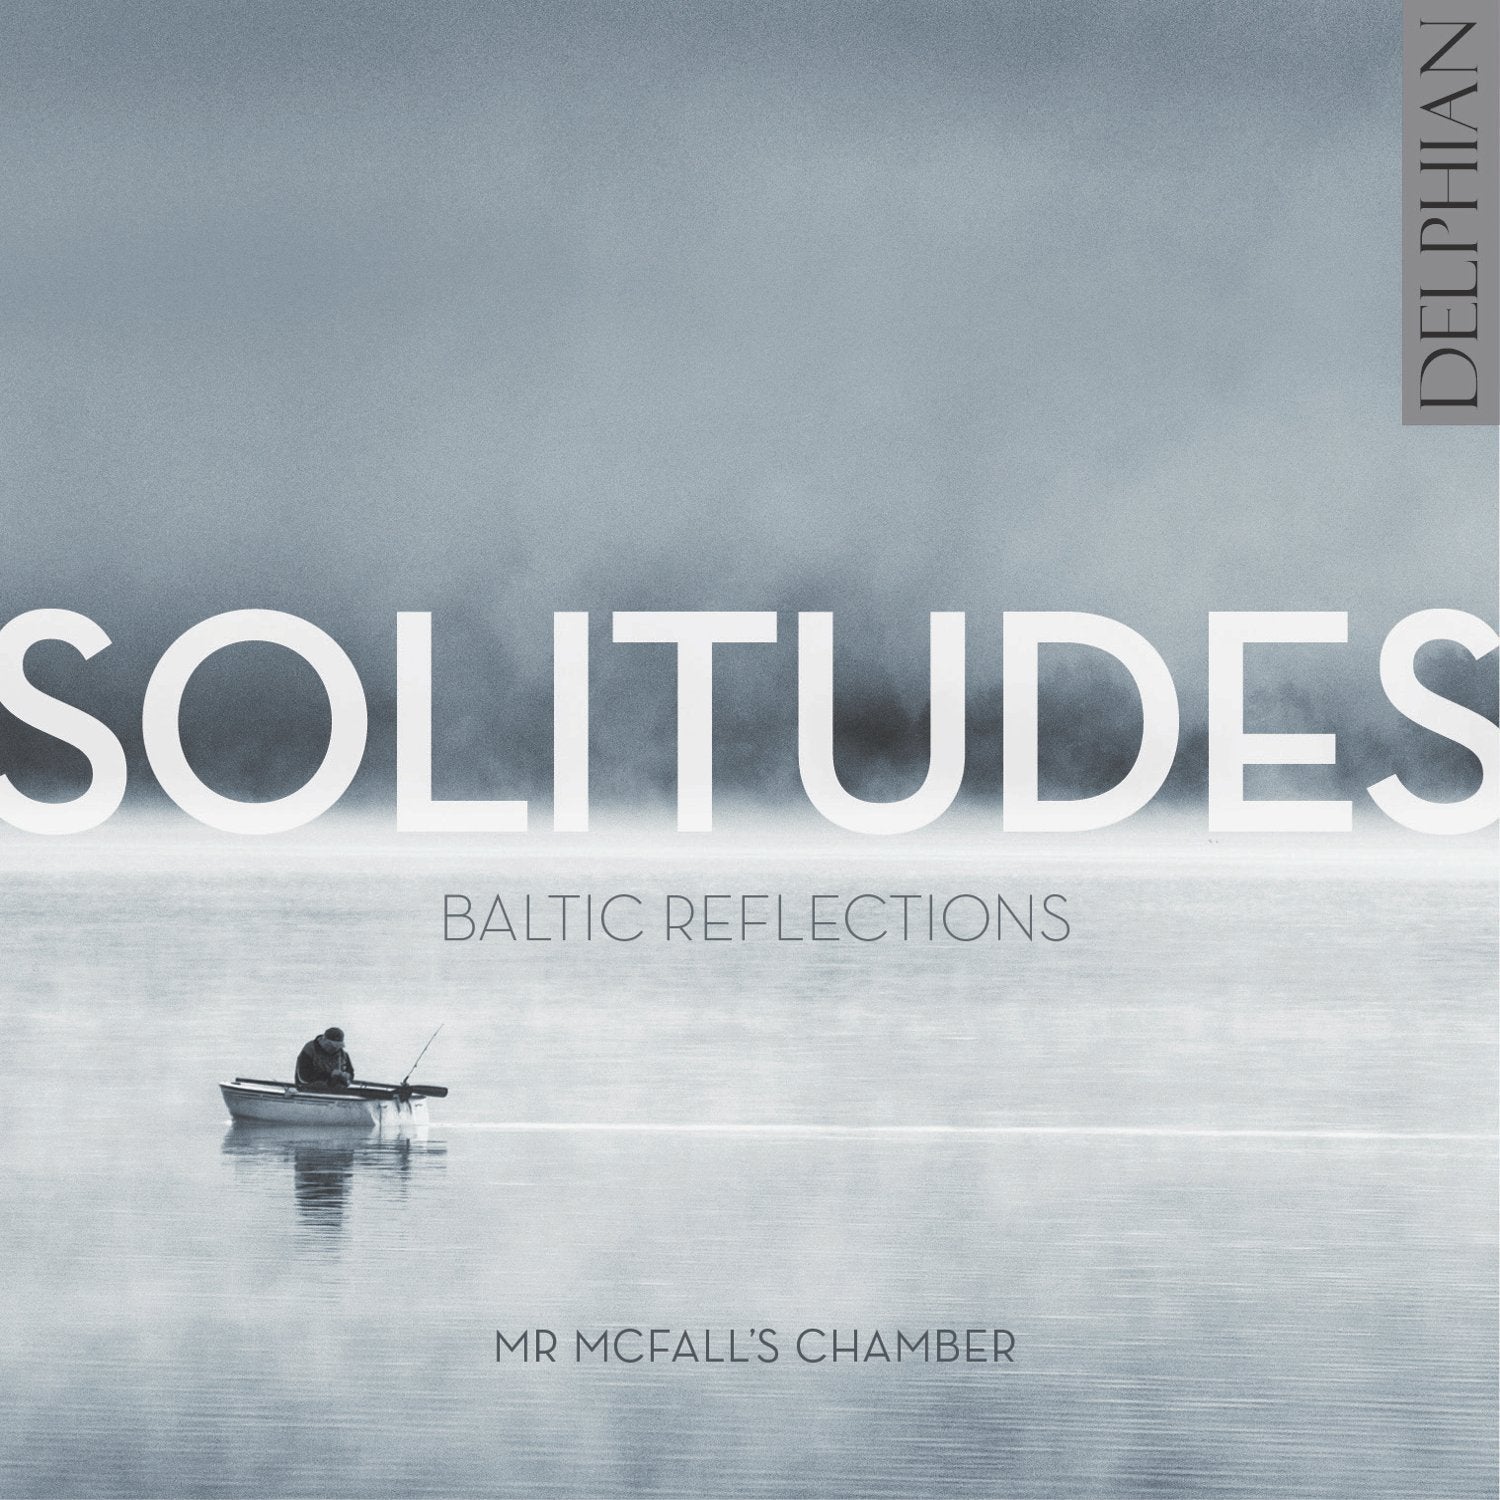 Solitudes: Baltic Reflections CD Delphian Records